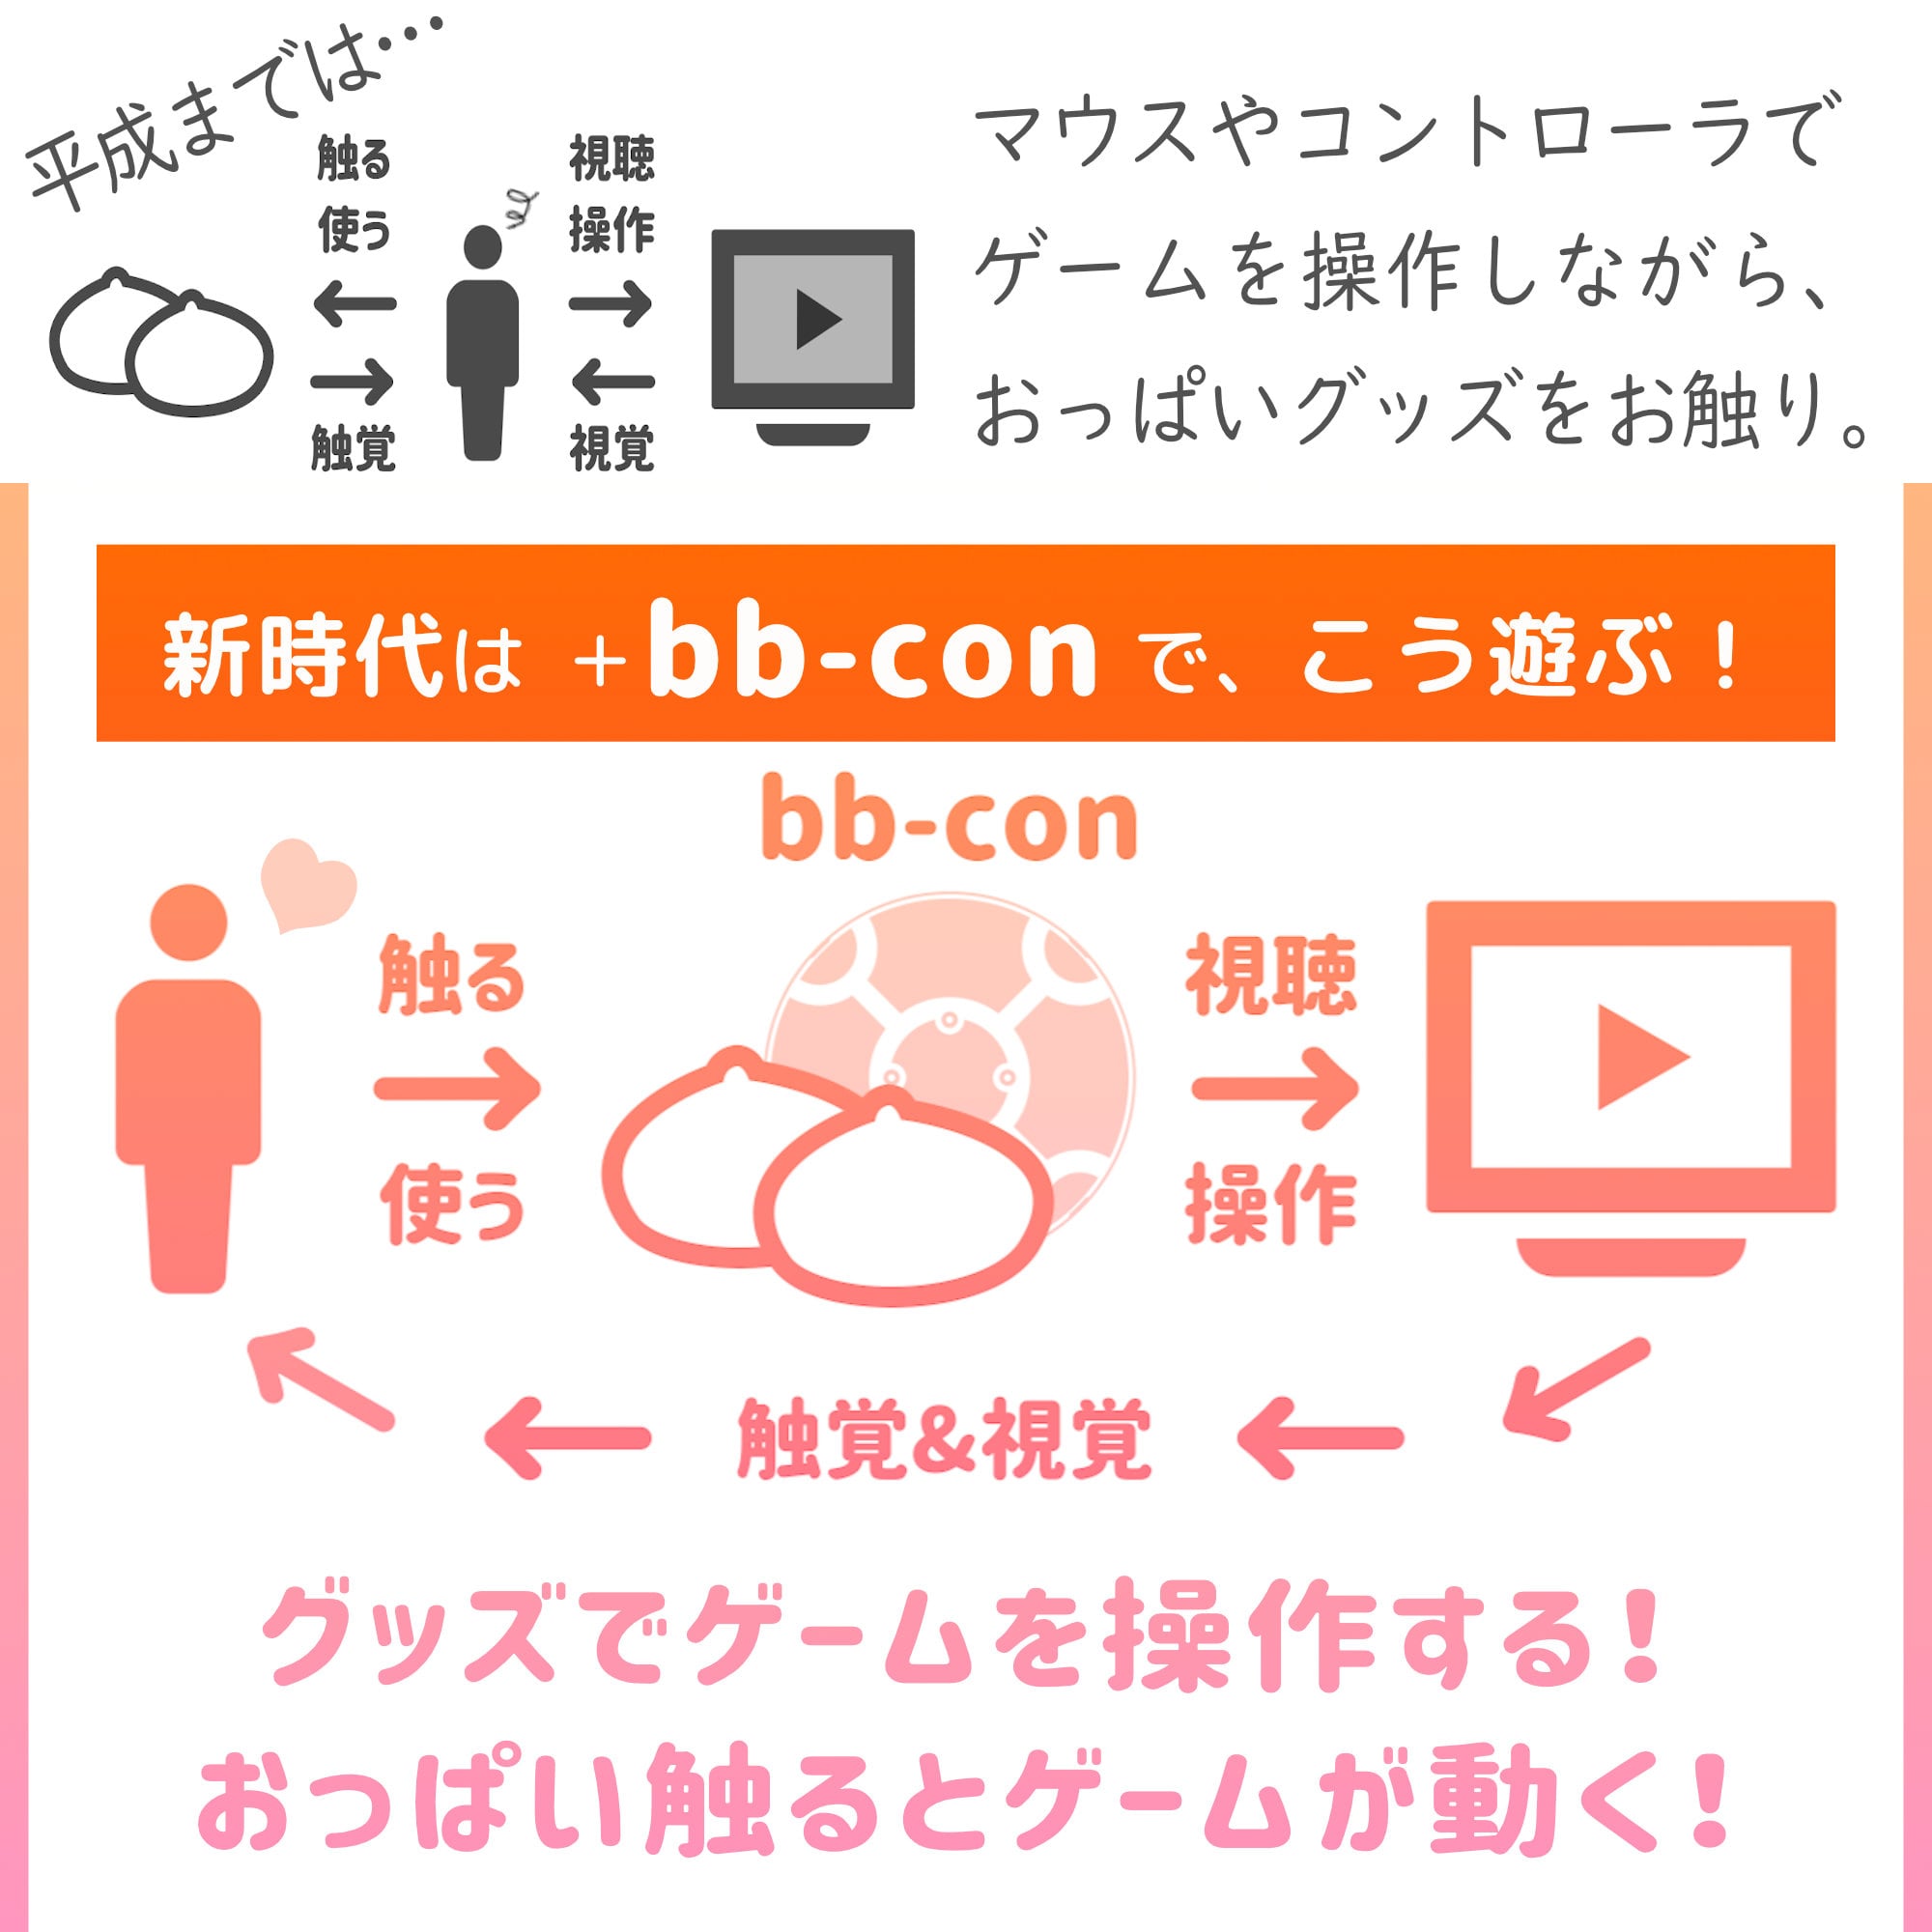 bb-con (日本製)